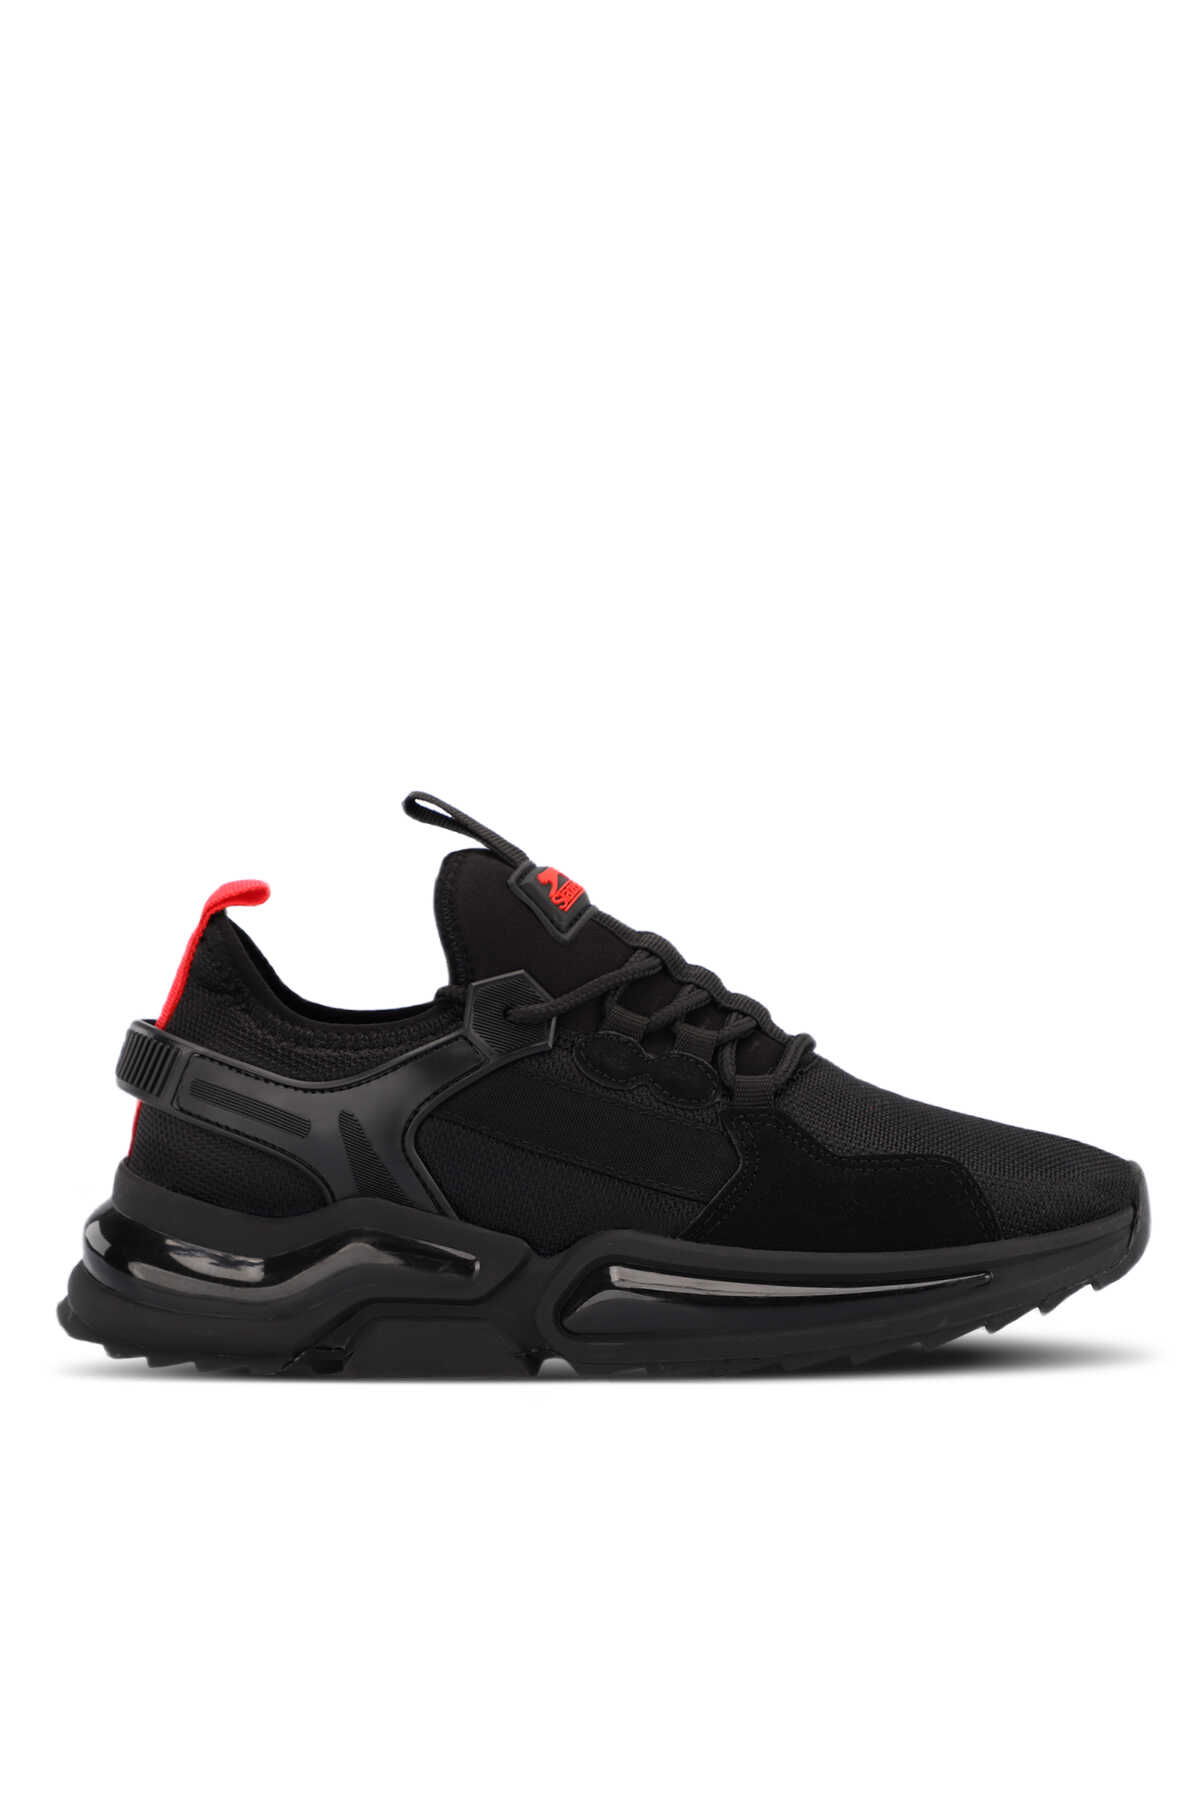 Slazenger - Slazenger TUCAN Sneaker Erkek Ayakkabı Siyah / Kırmızı